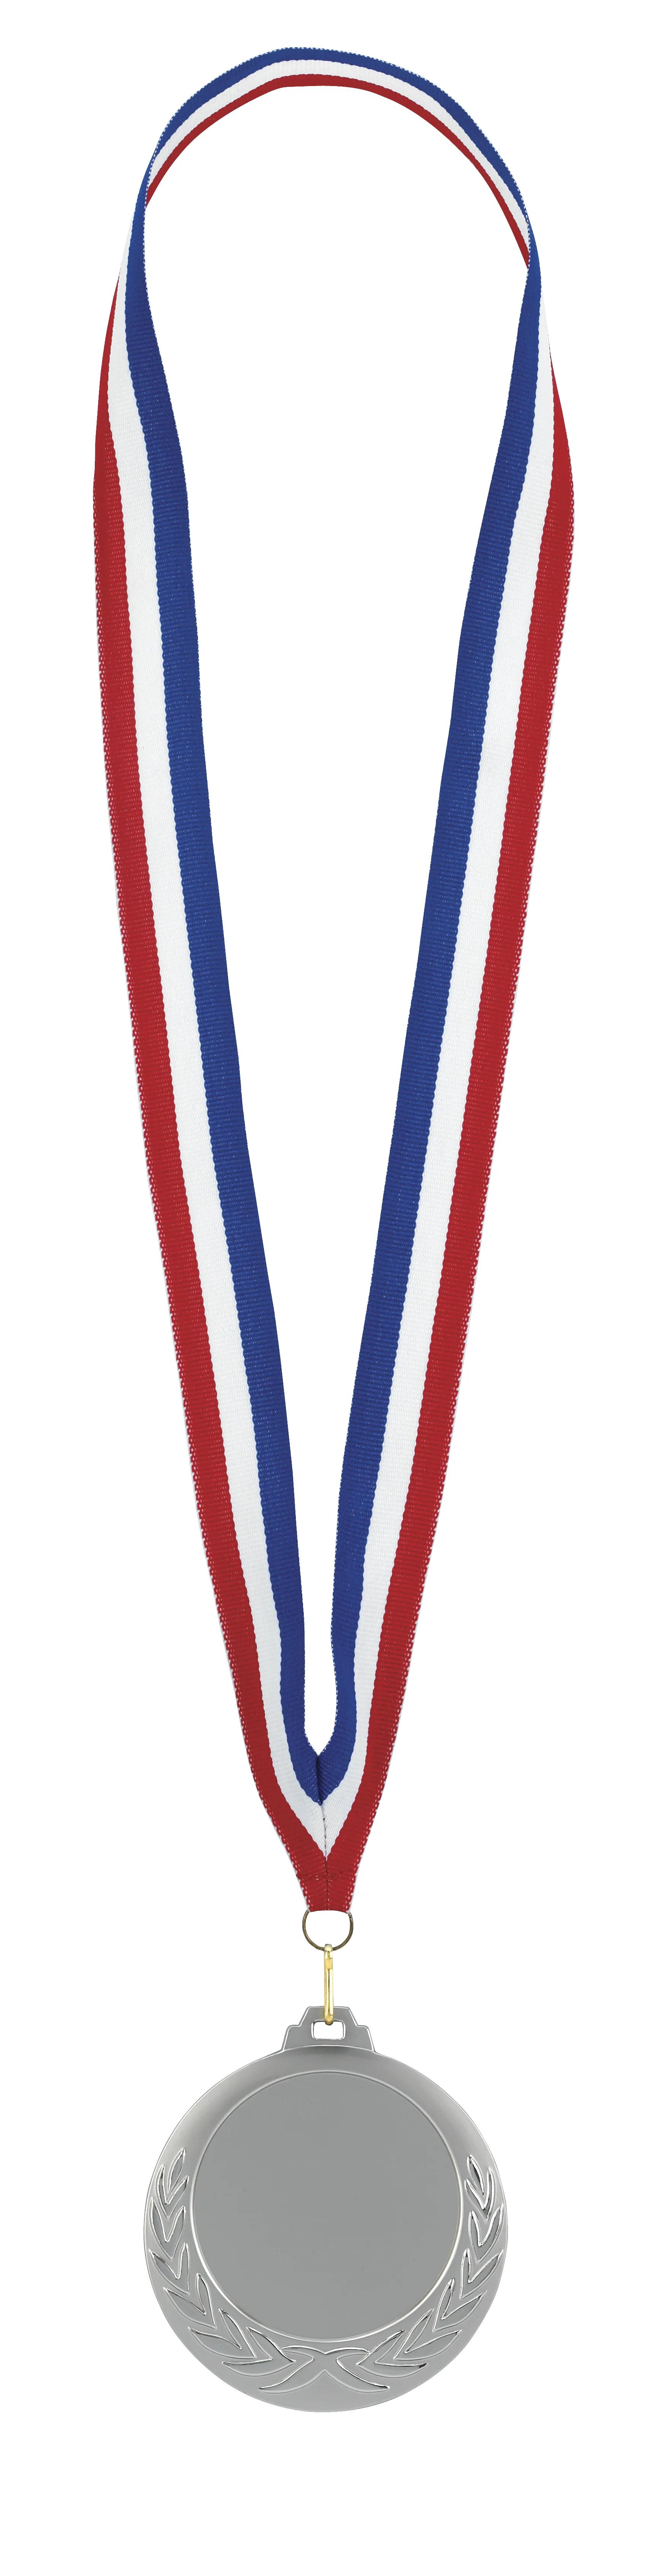 Laurel Wreath Medal 8 of 26